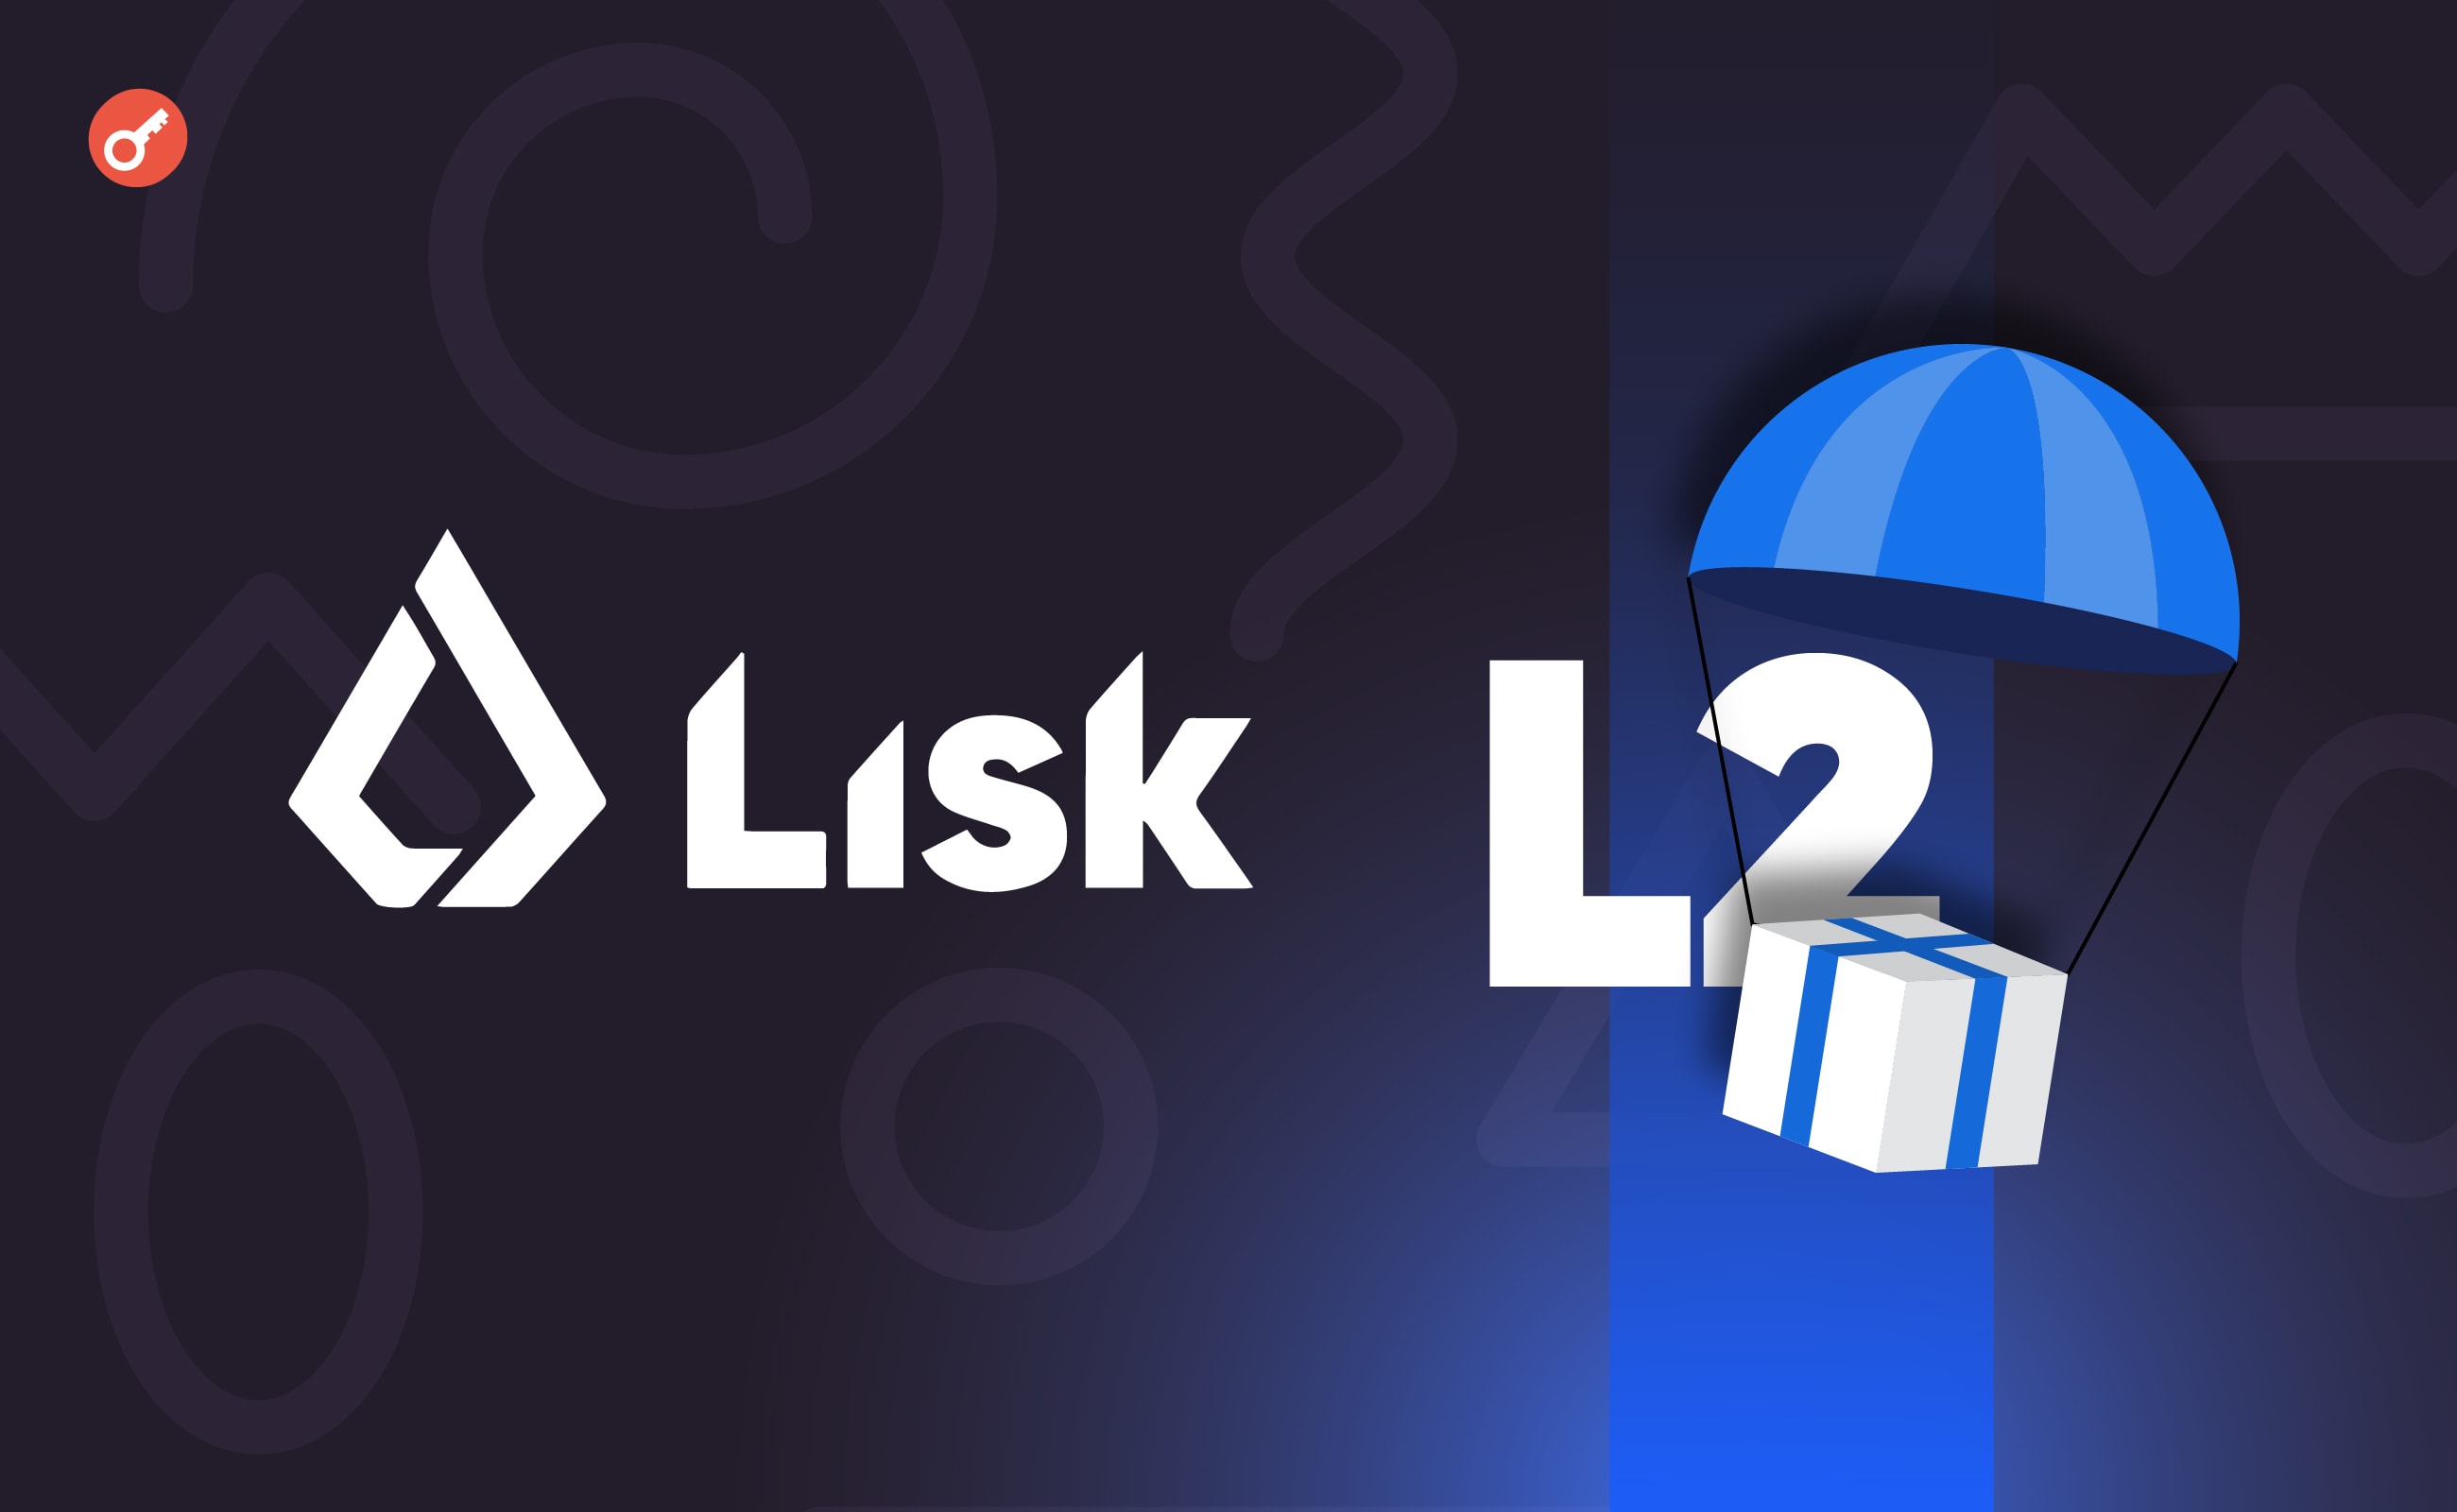 Команда Lisk поділилася планами щодо запуску L2-мережі та проведення аірдропу. Головний колаж новини.